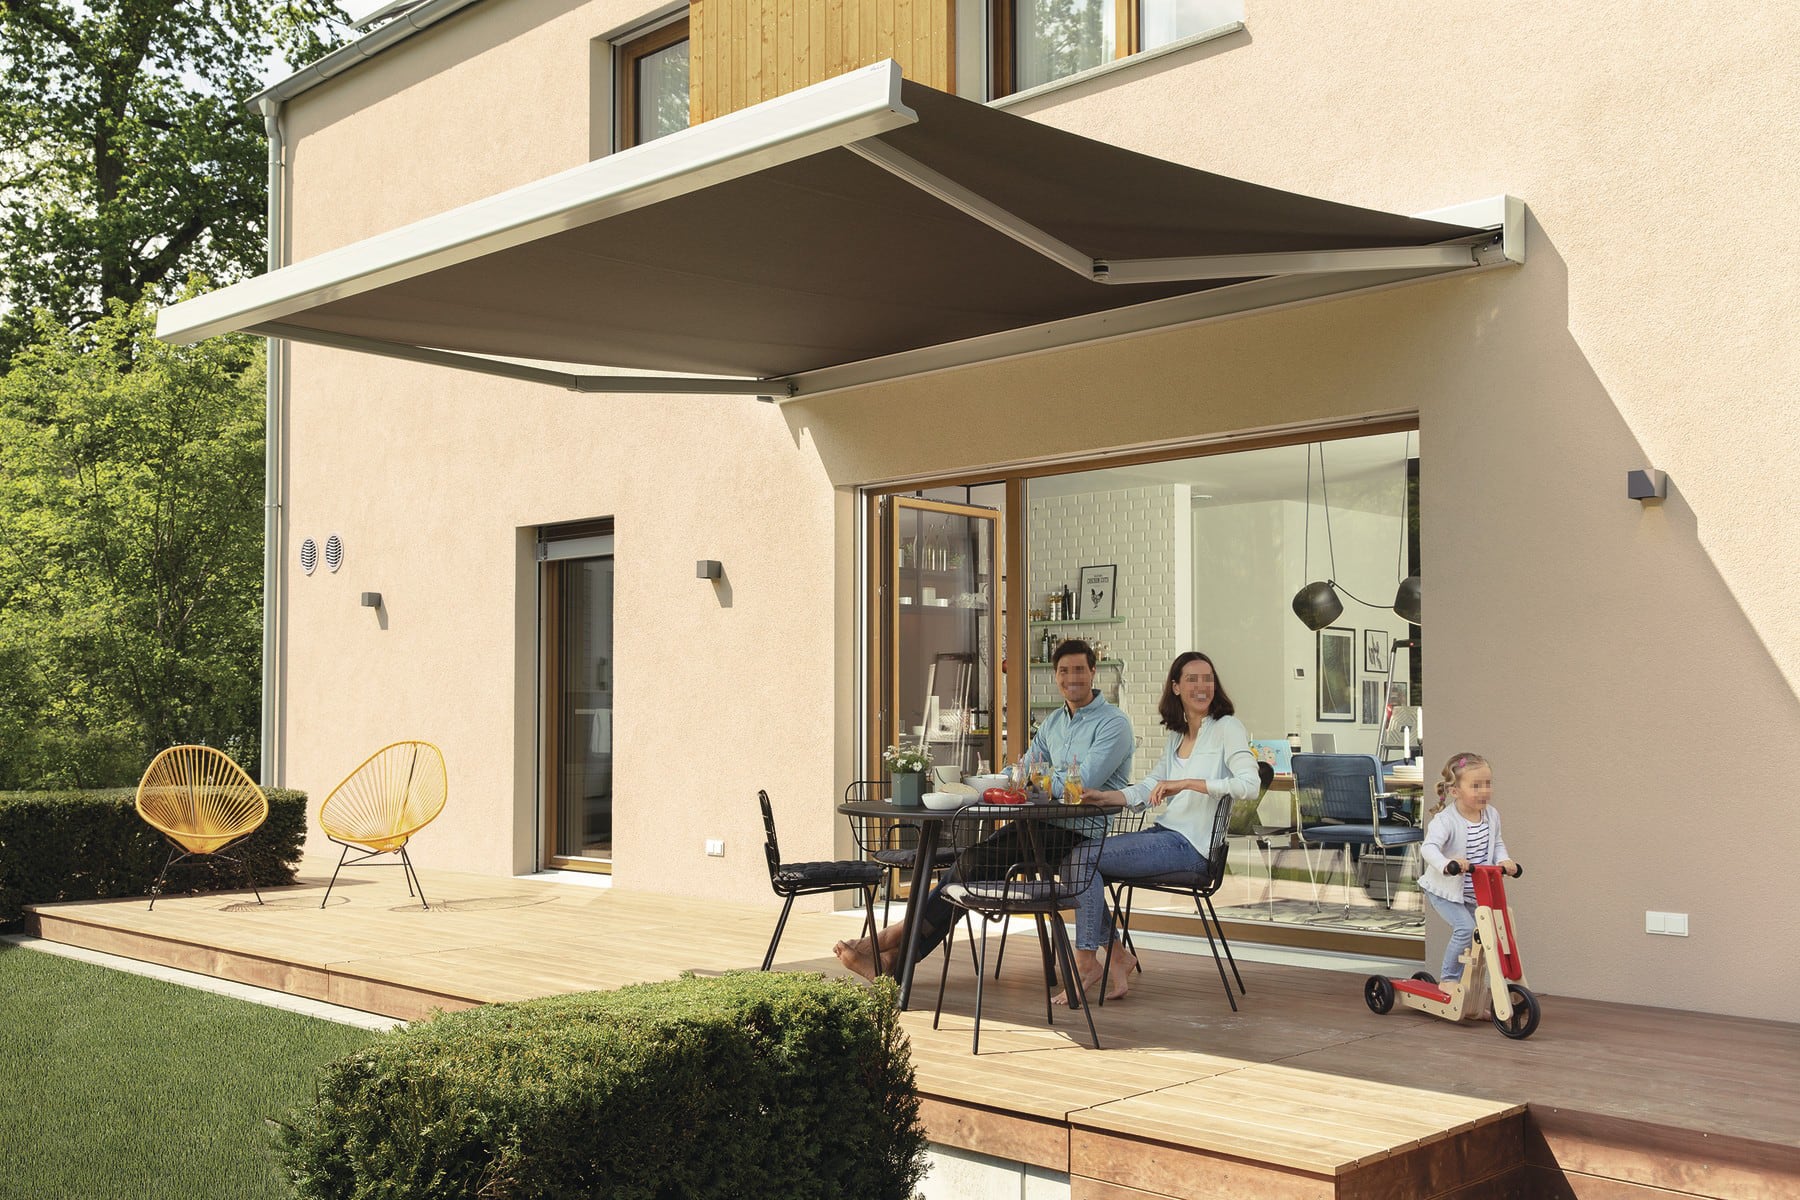 Terrasse aus Holz mit Markise - Haus Design Ideen Einfamilienhaus Sunshine 220 WeberHaus - HausbauDirekt.de